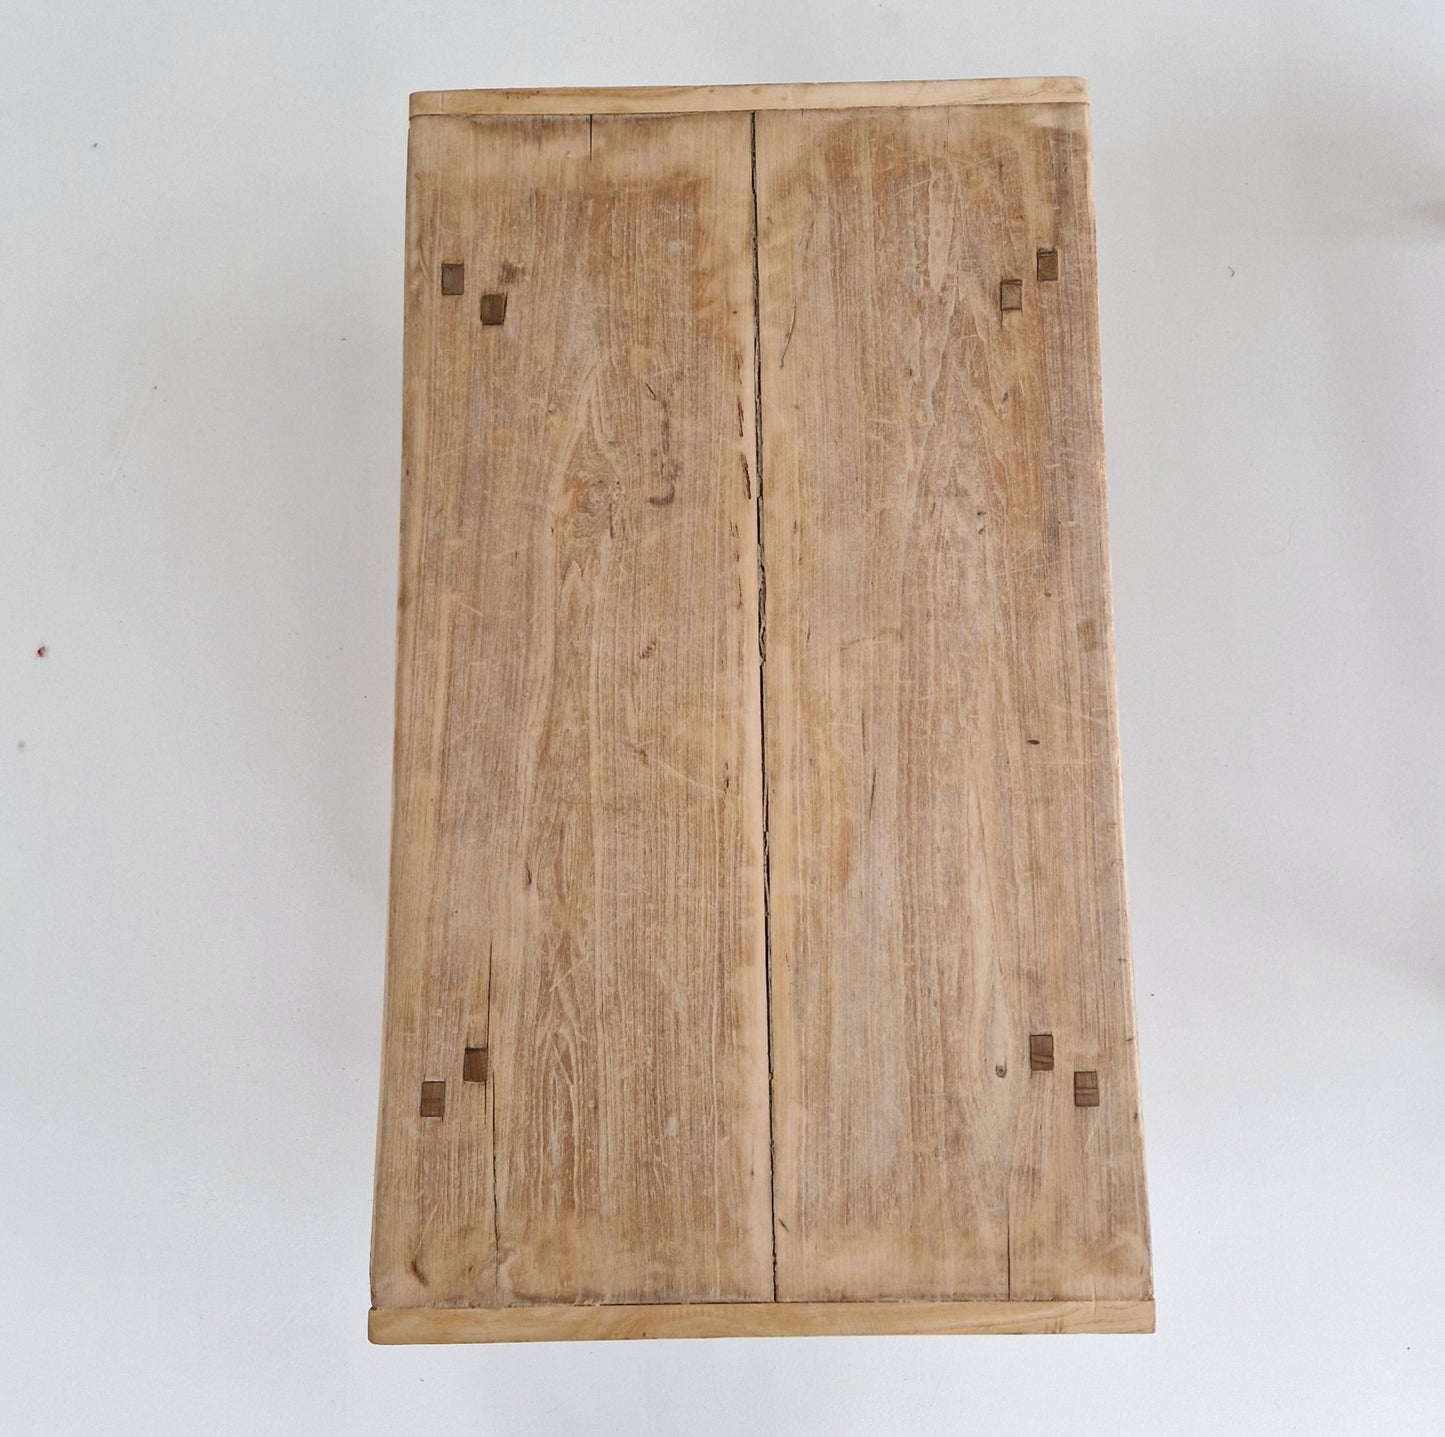 Chinees oud houten tafeltje #2 (91x52x28,5)